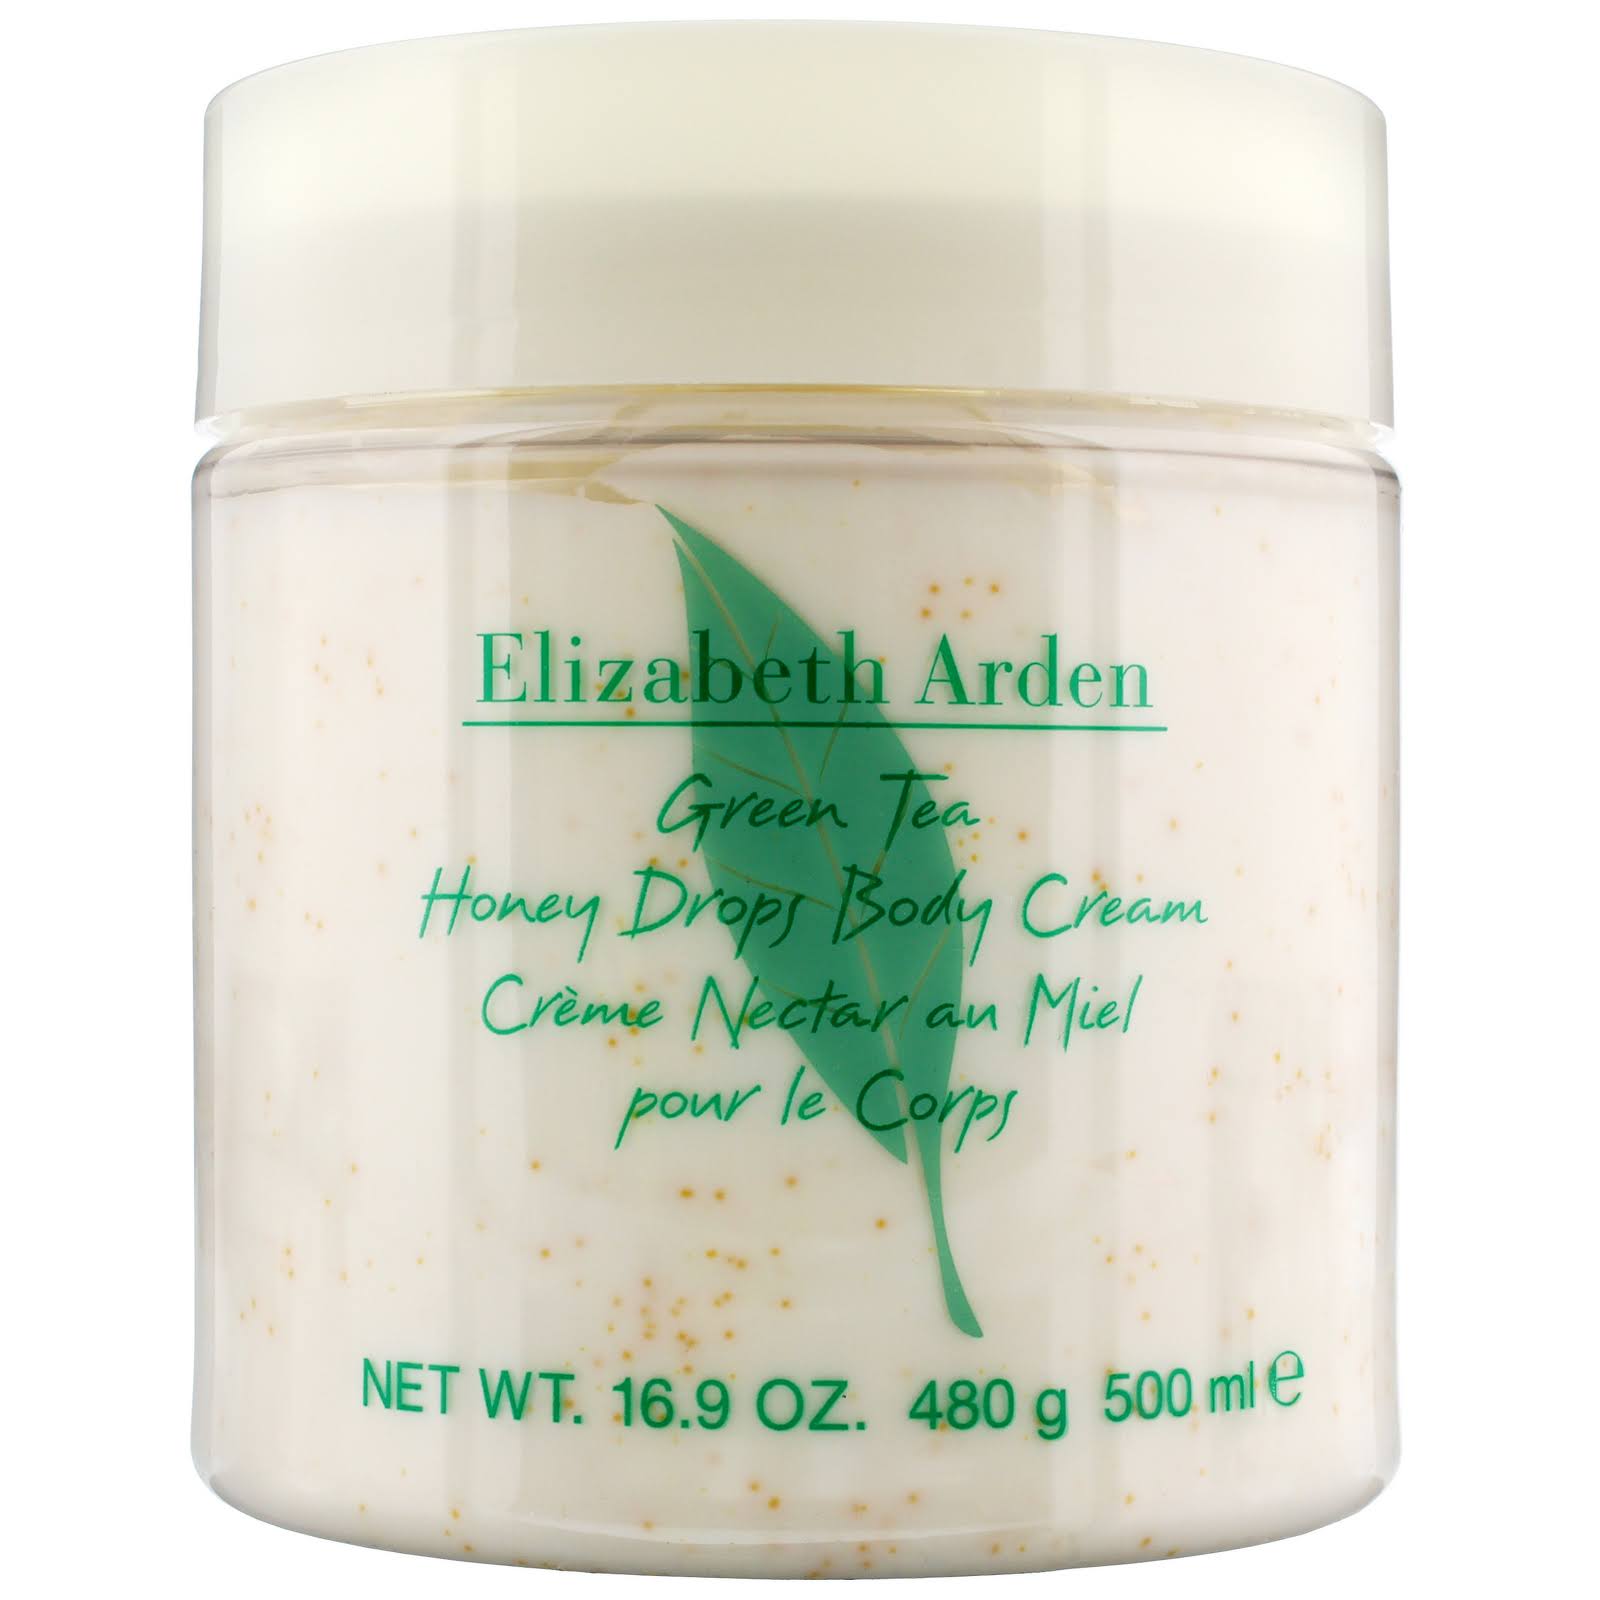 Elizabeth Arden Body Cream - Green Tea, 500ml